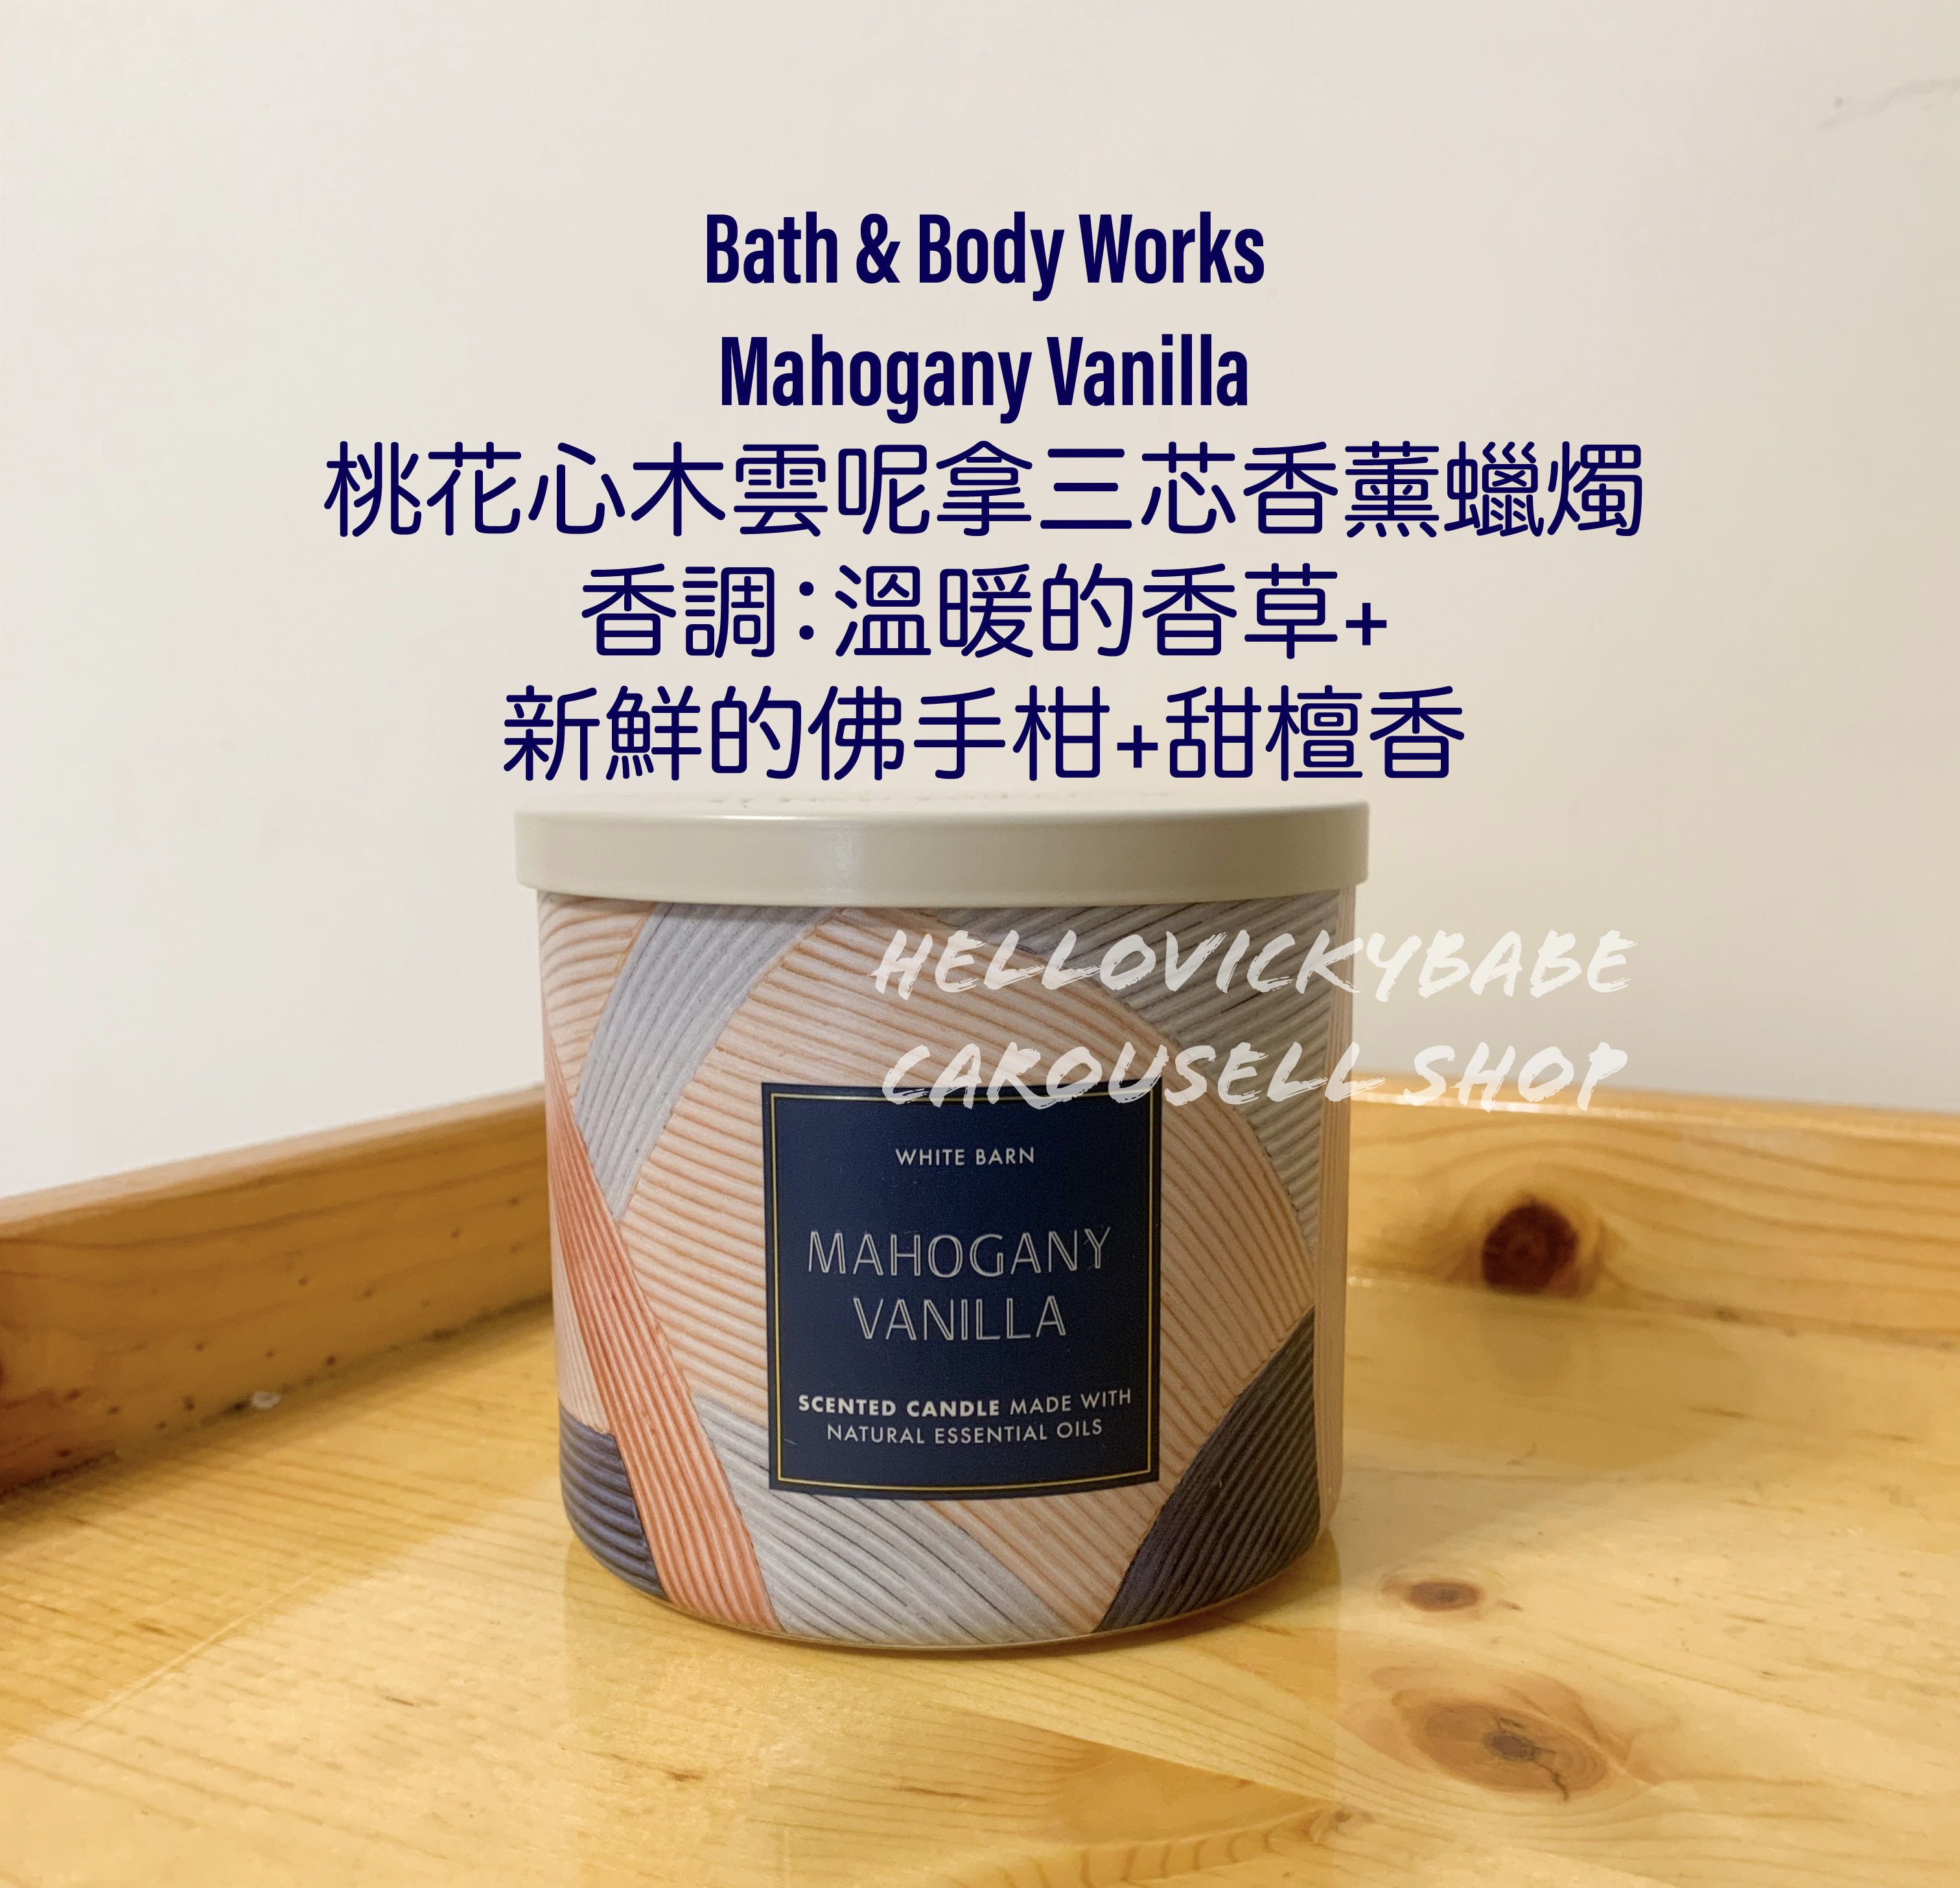 6月香港現貨美國直送] Bath & Body Works BBW Mahogany Vanilla桃花心